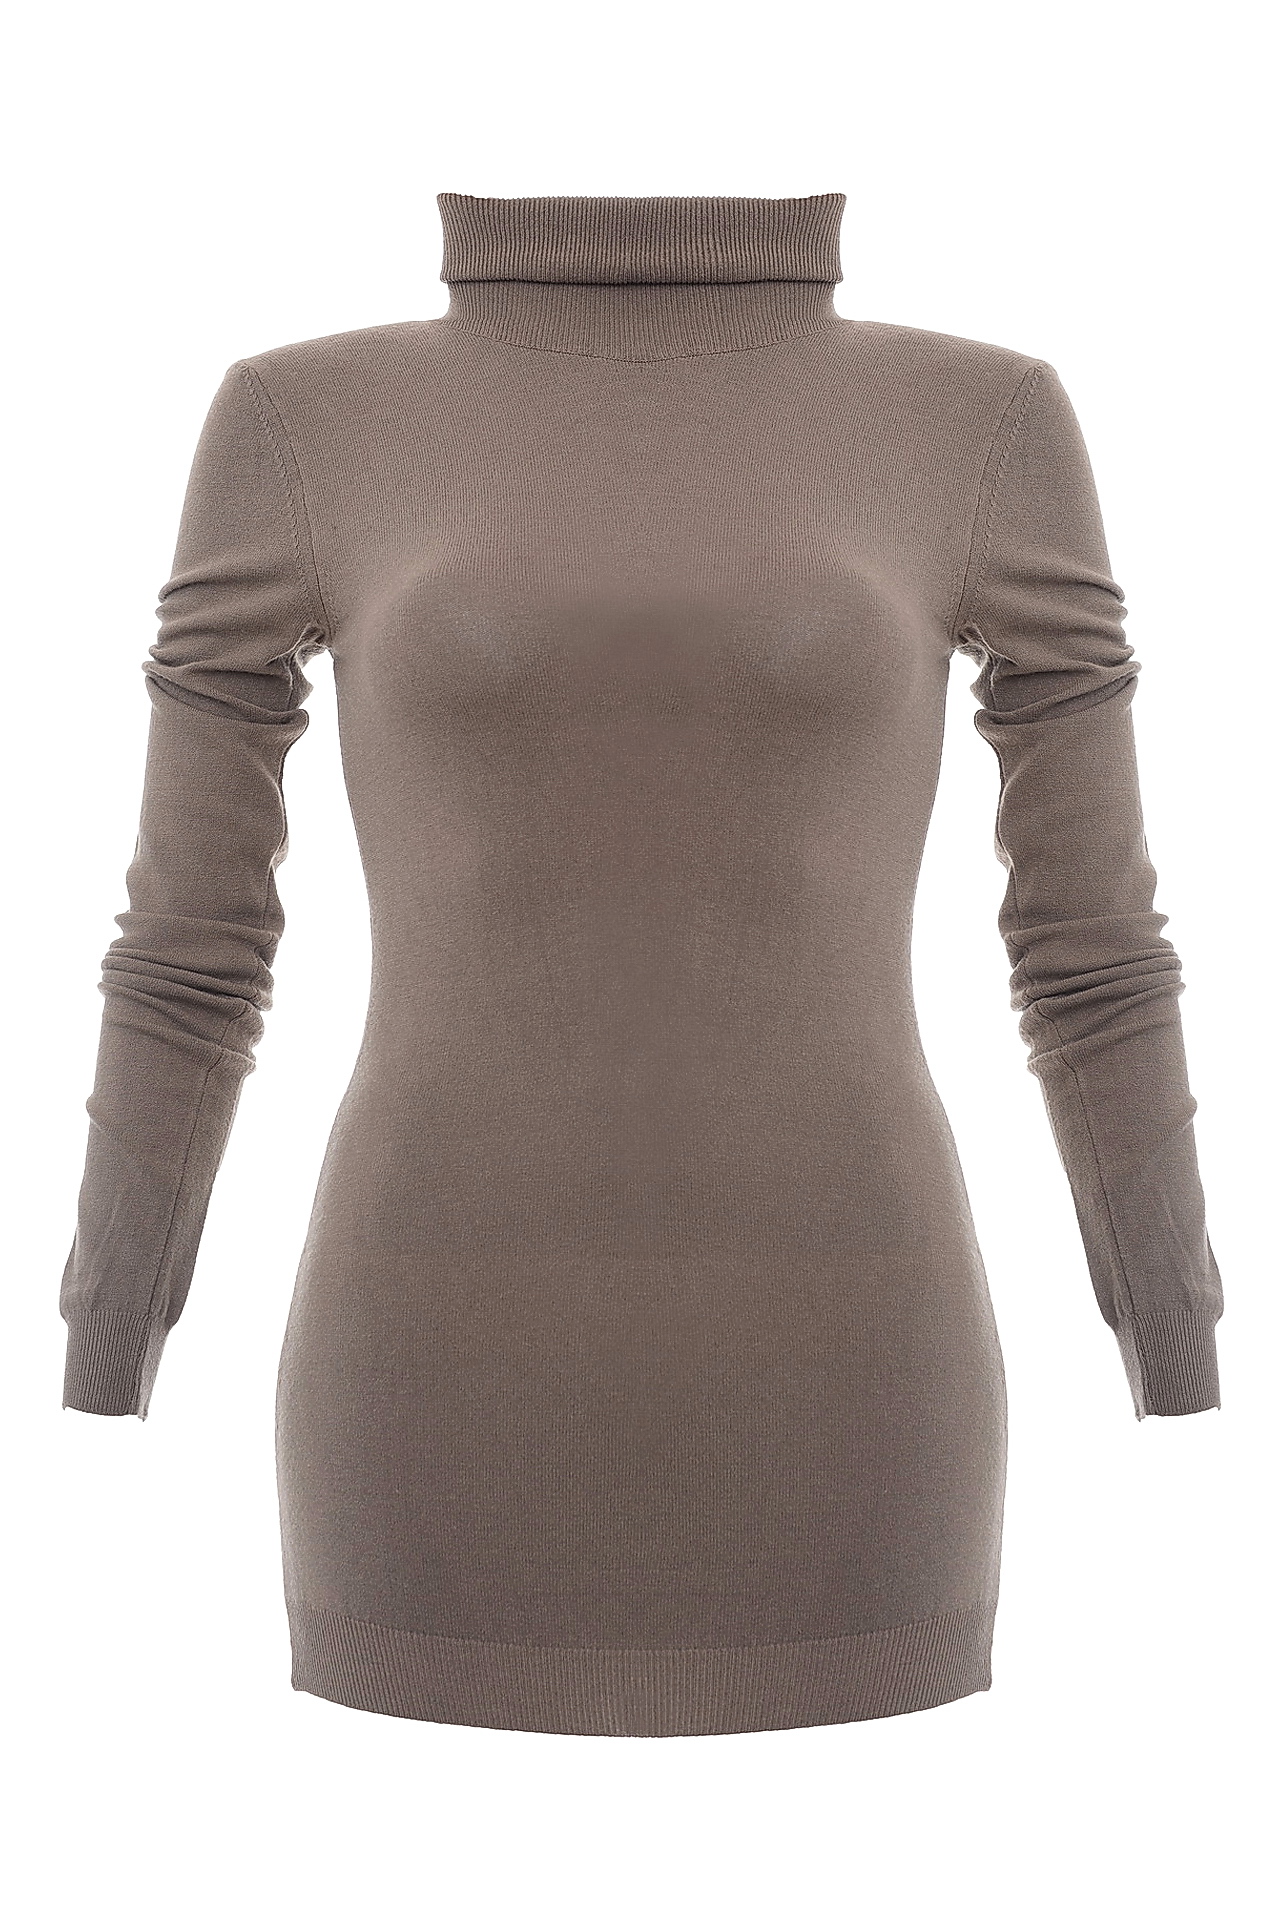 Одежда женская Водолазка NORTHLAND (2005S/13.1). Купить за 3950 руб.